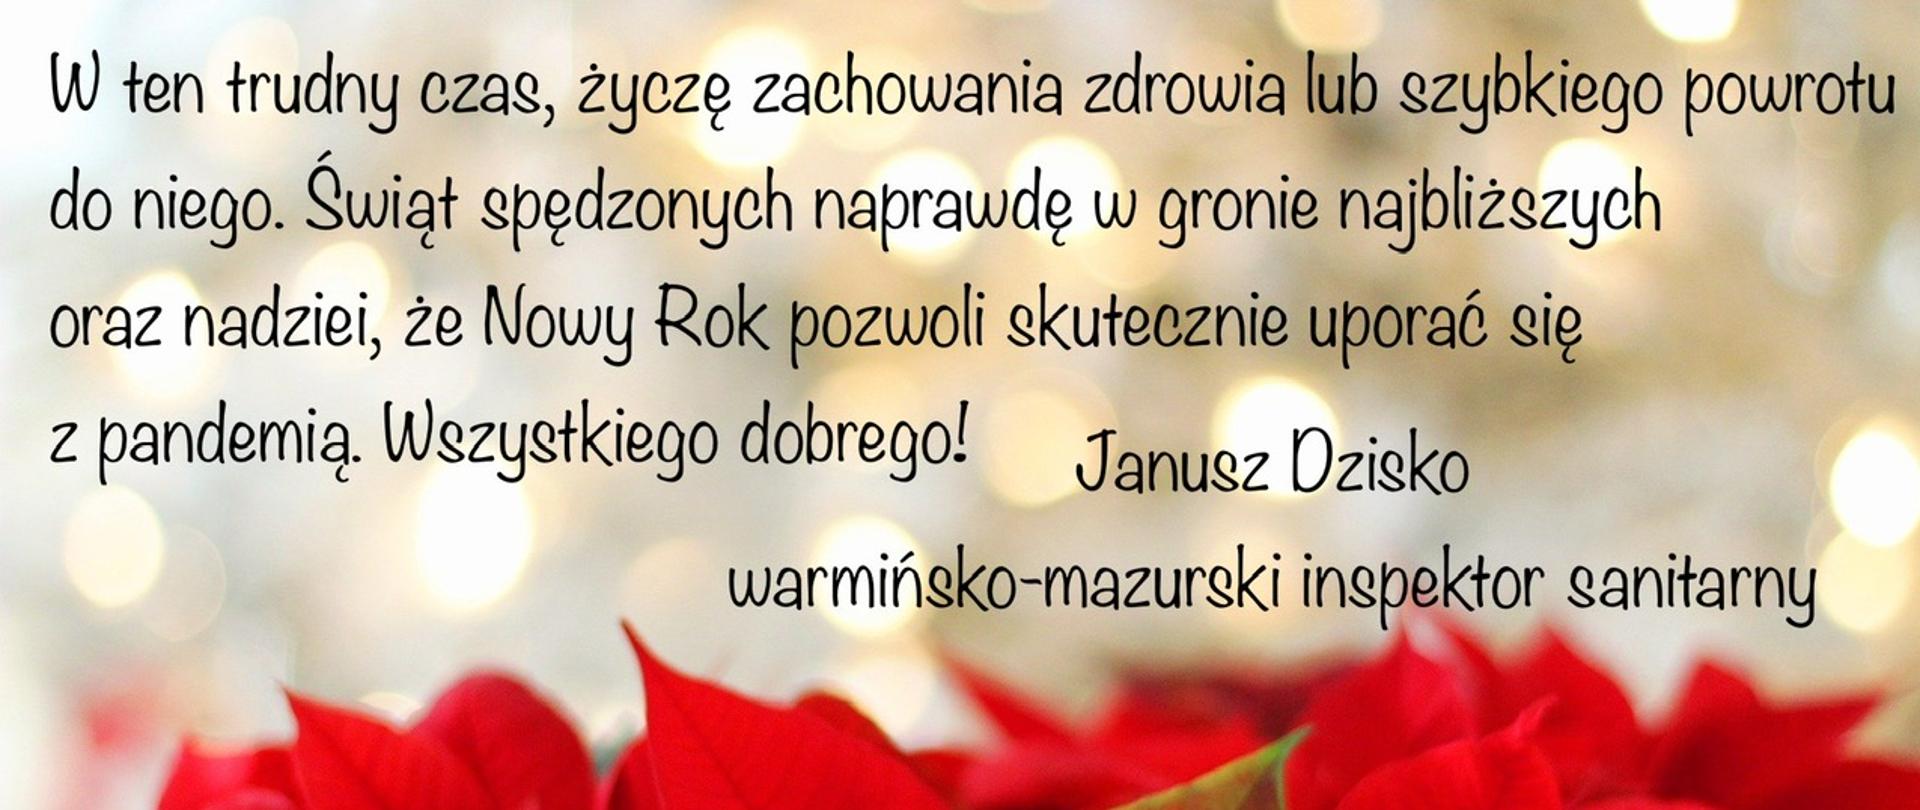 Kartka z życzeniami świątecznymi od warmińsko-mazurskiego inspektora sanitarnego